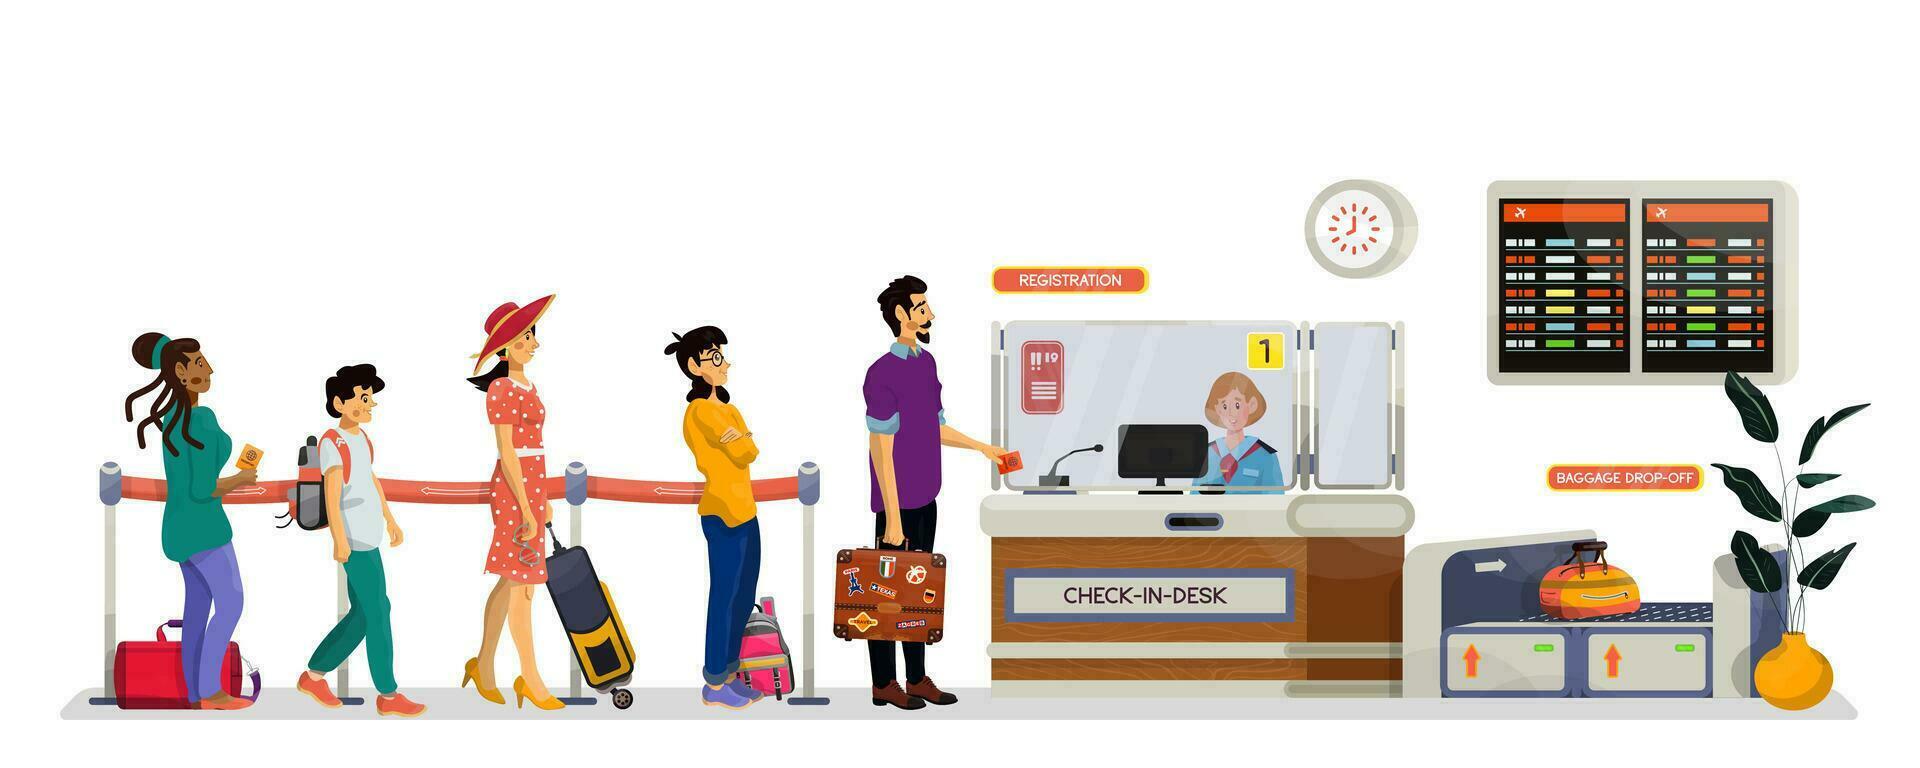 vector tekenfilm illustratie van controleren in bureau of registratie bureau met lang wachtrij in een luchthaven.